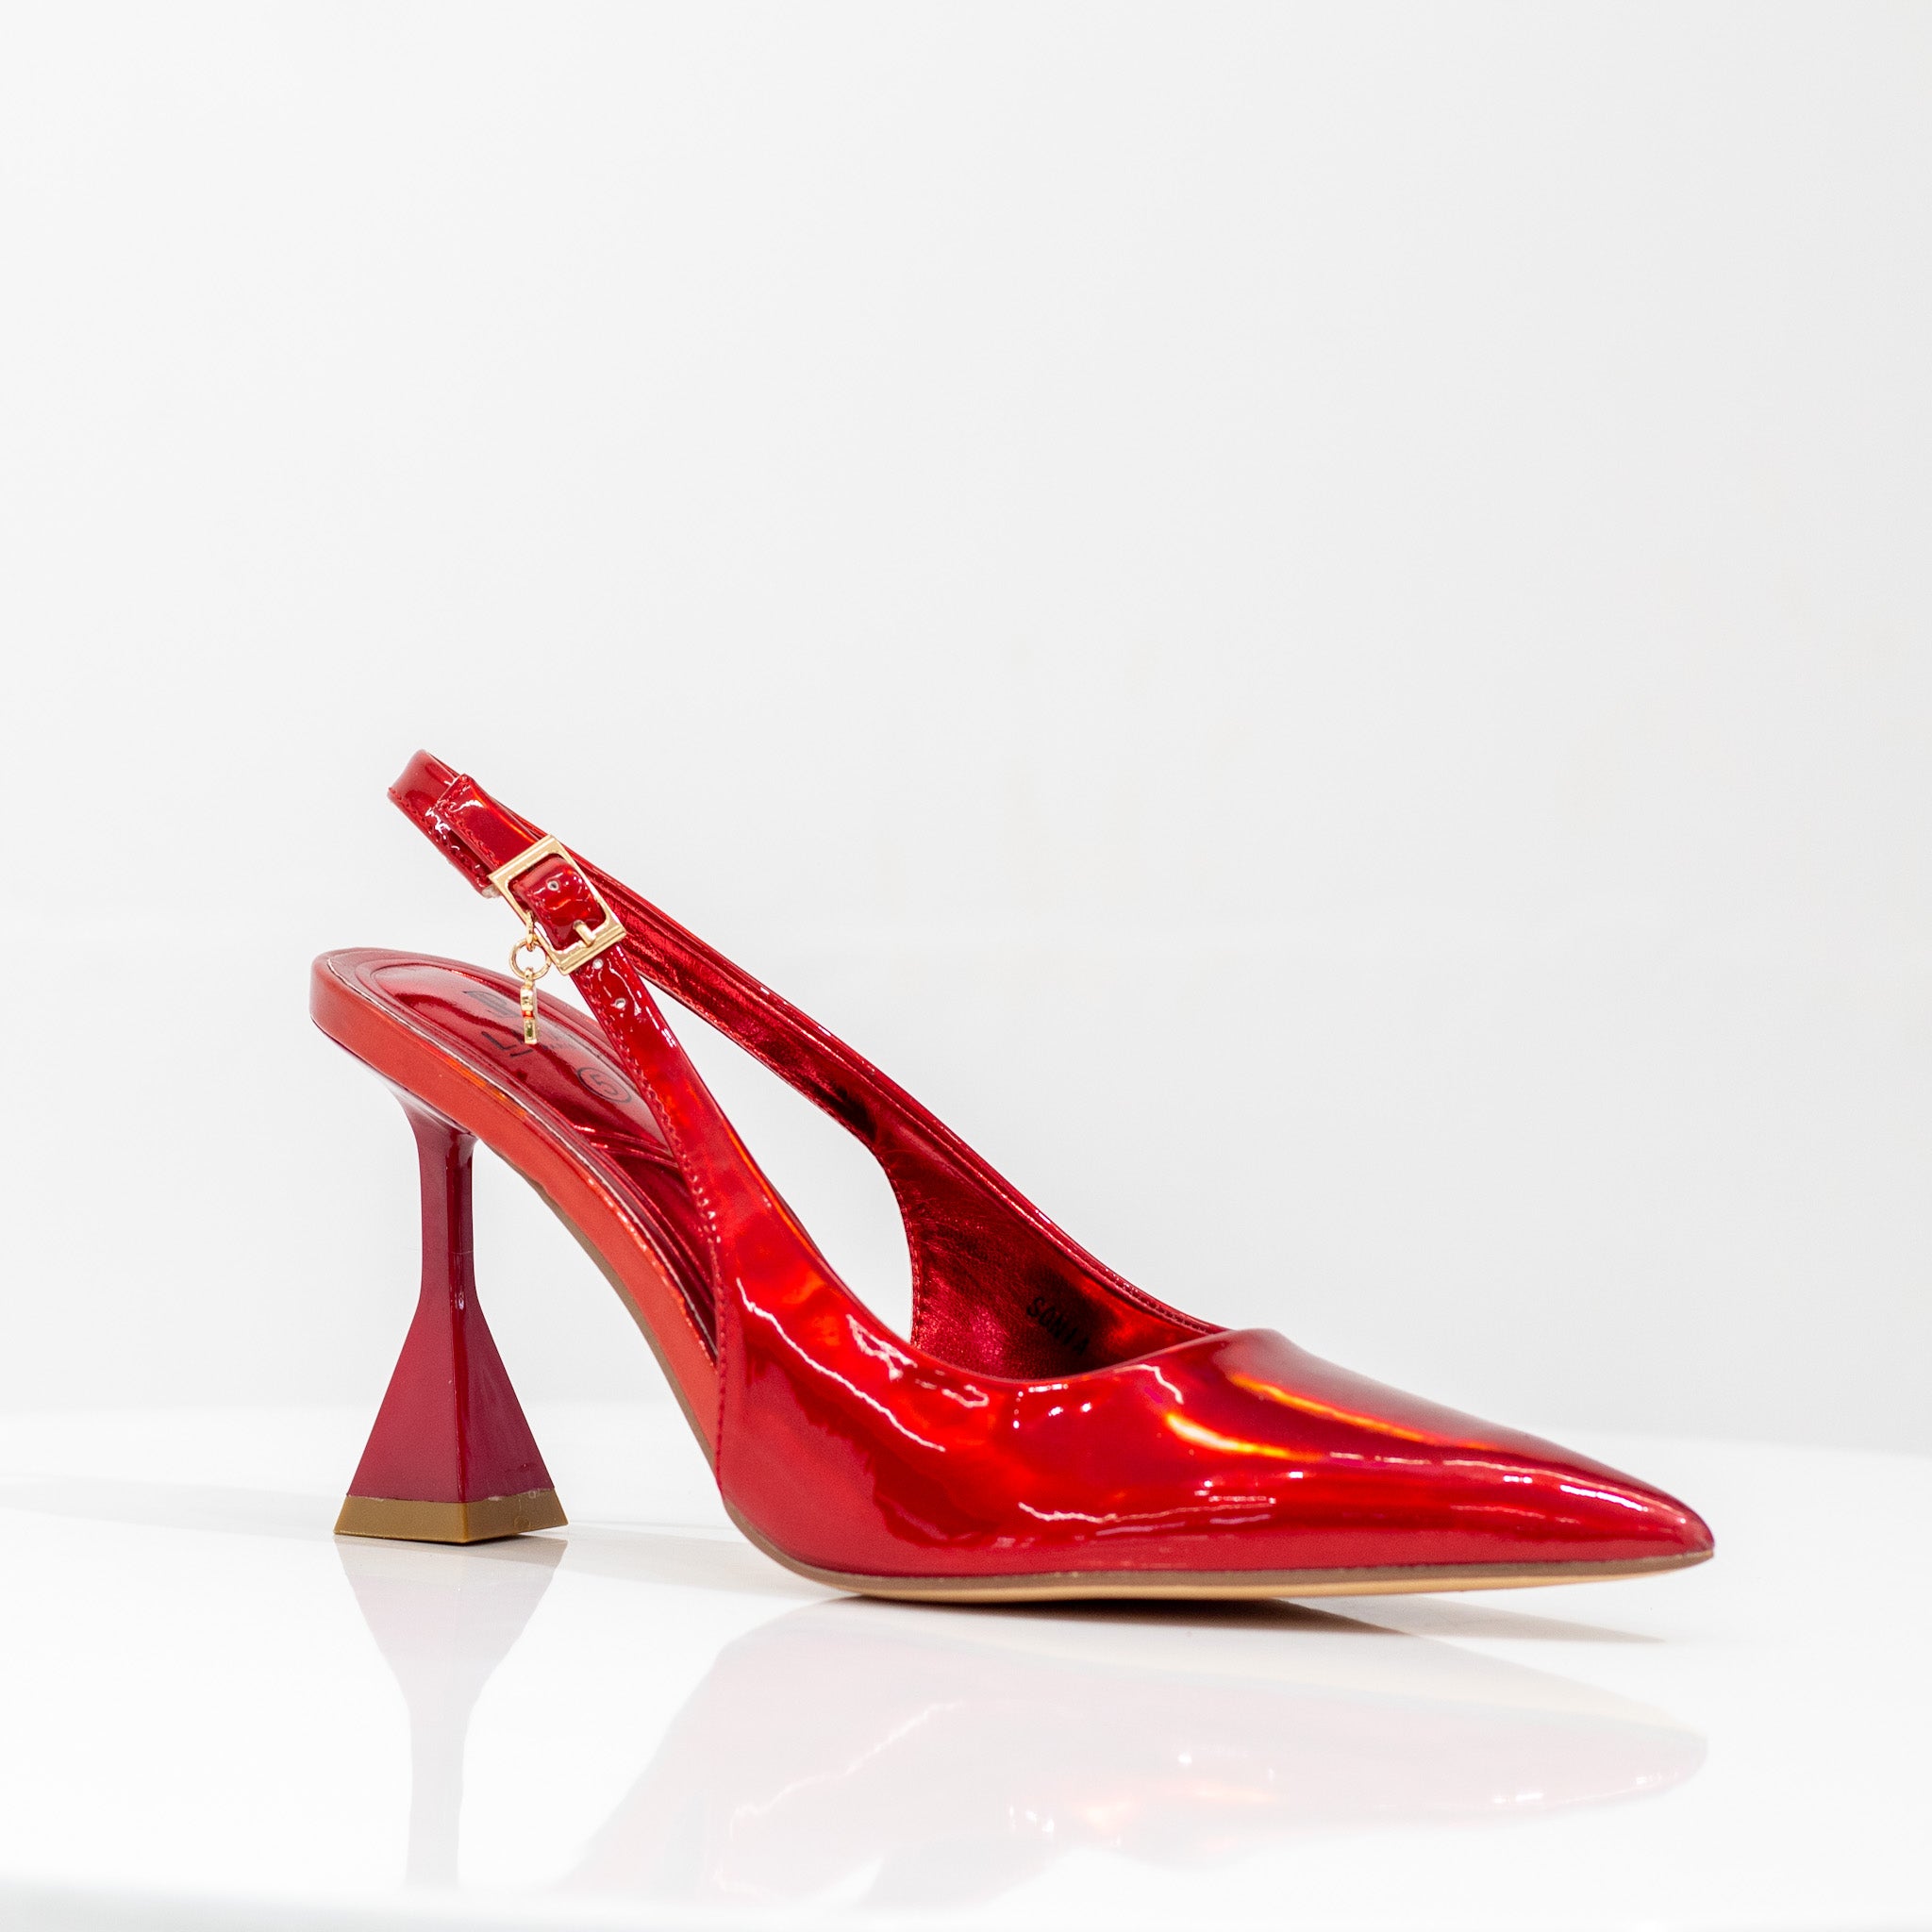 Sonia 7cm spool heel sling back pump red